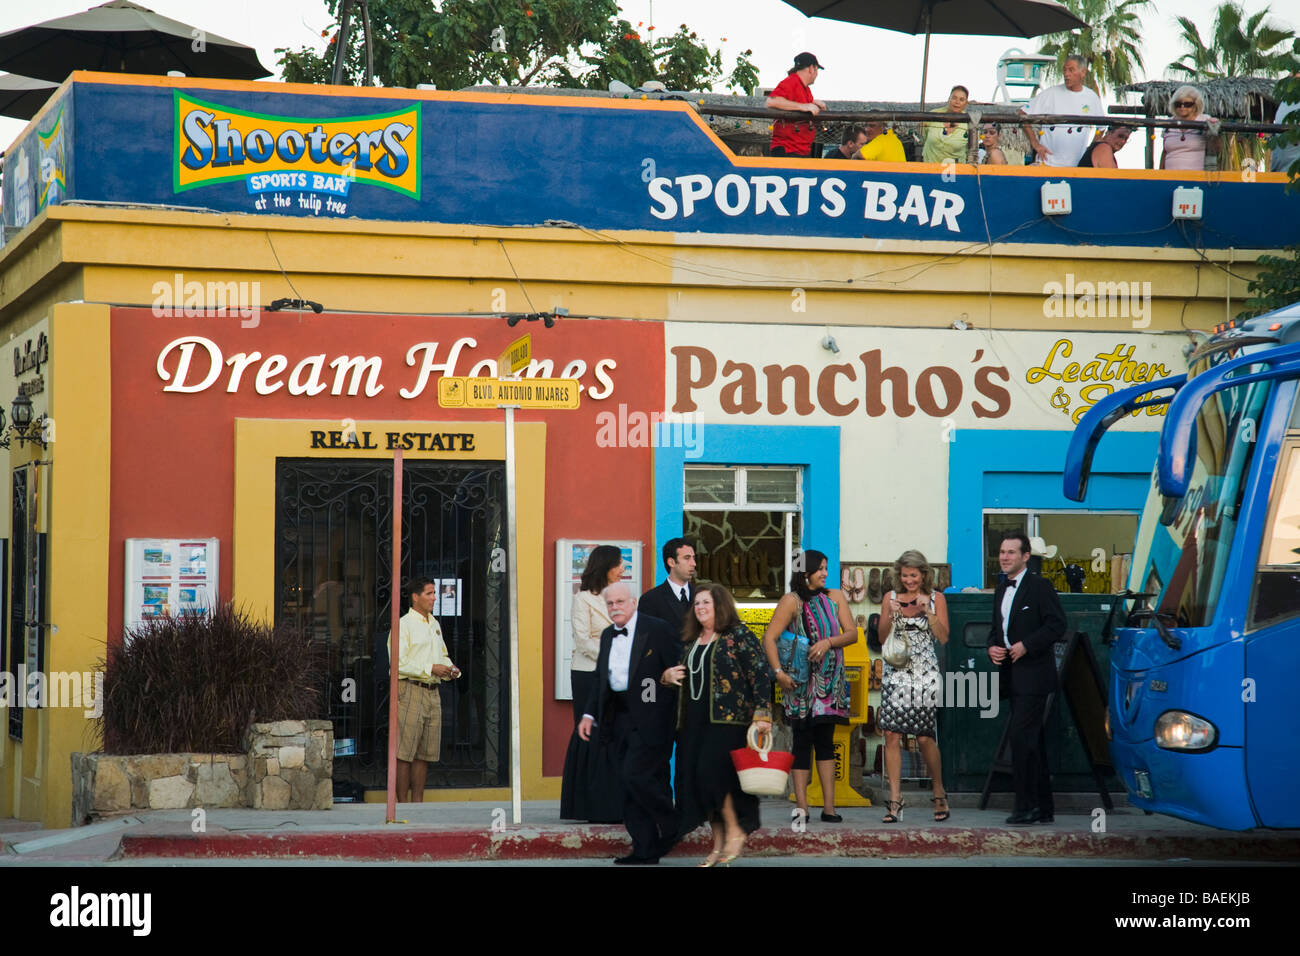 Mexique San Jose del Cabo invités du mariage dans l'Habillement formel passé à pied sports bar et magasins dans la ville mexicaine Banque D'Images